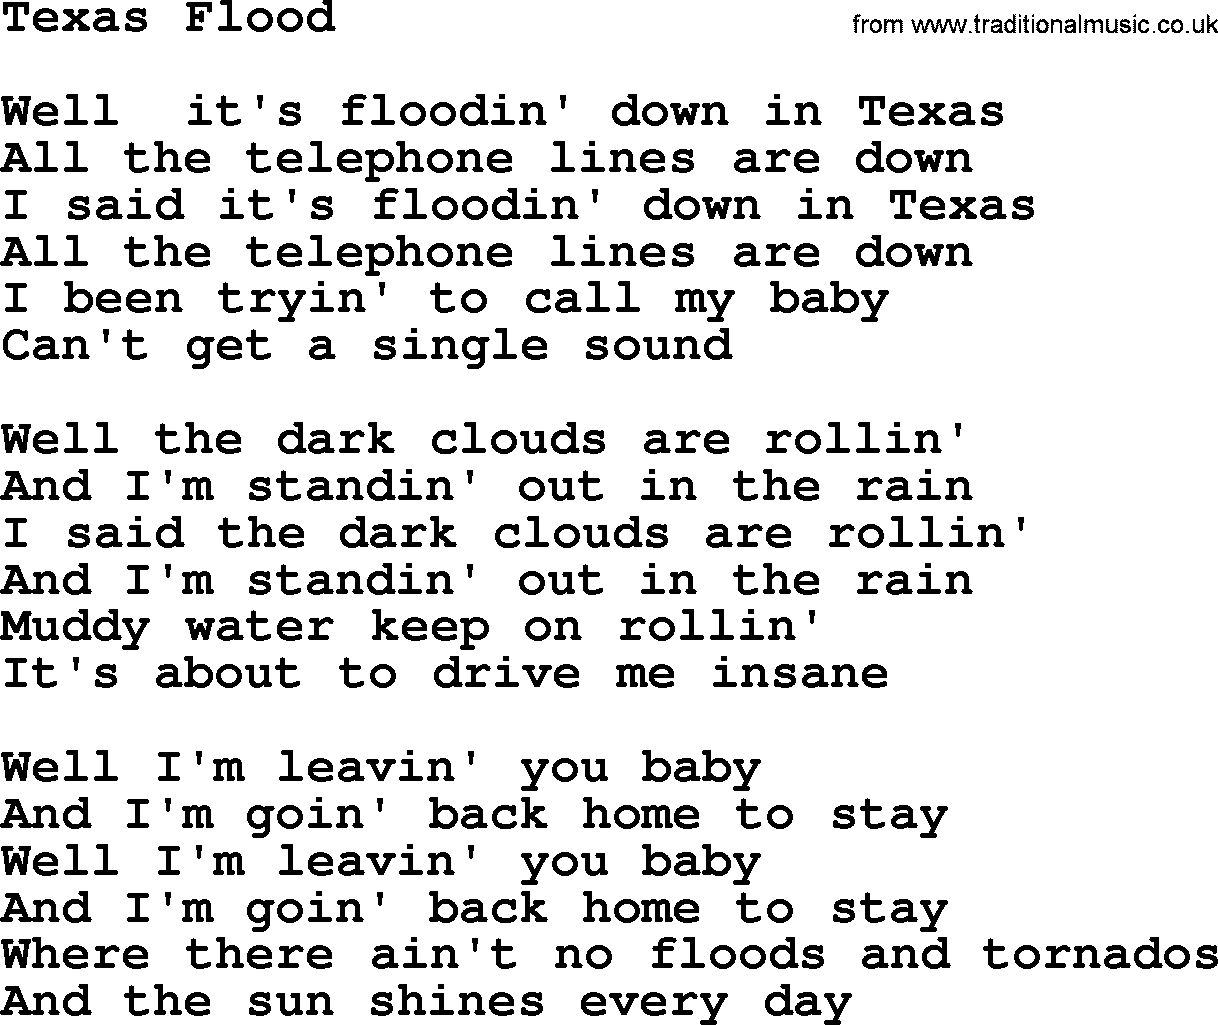 Willie Nelson song: Texas Flood lyrics